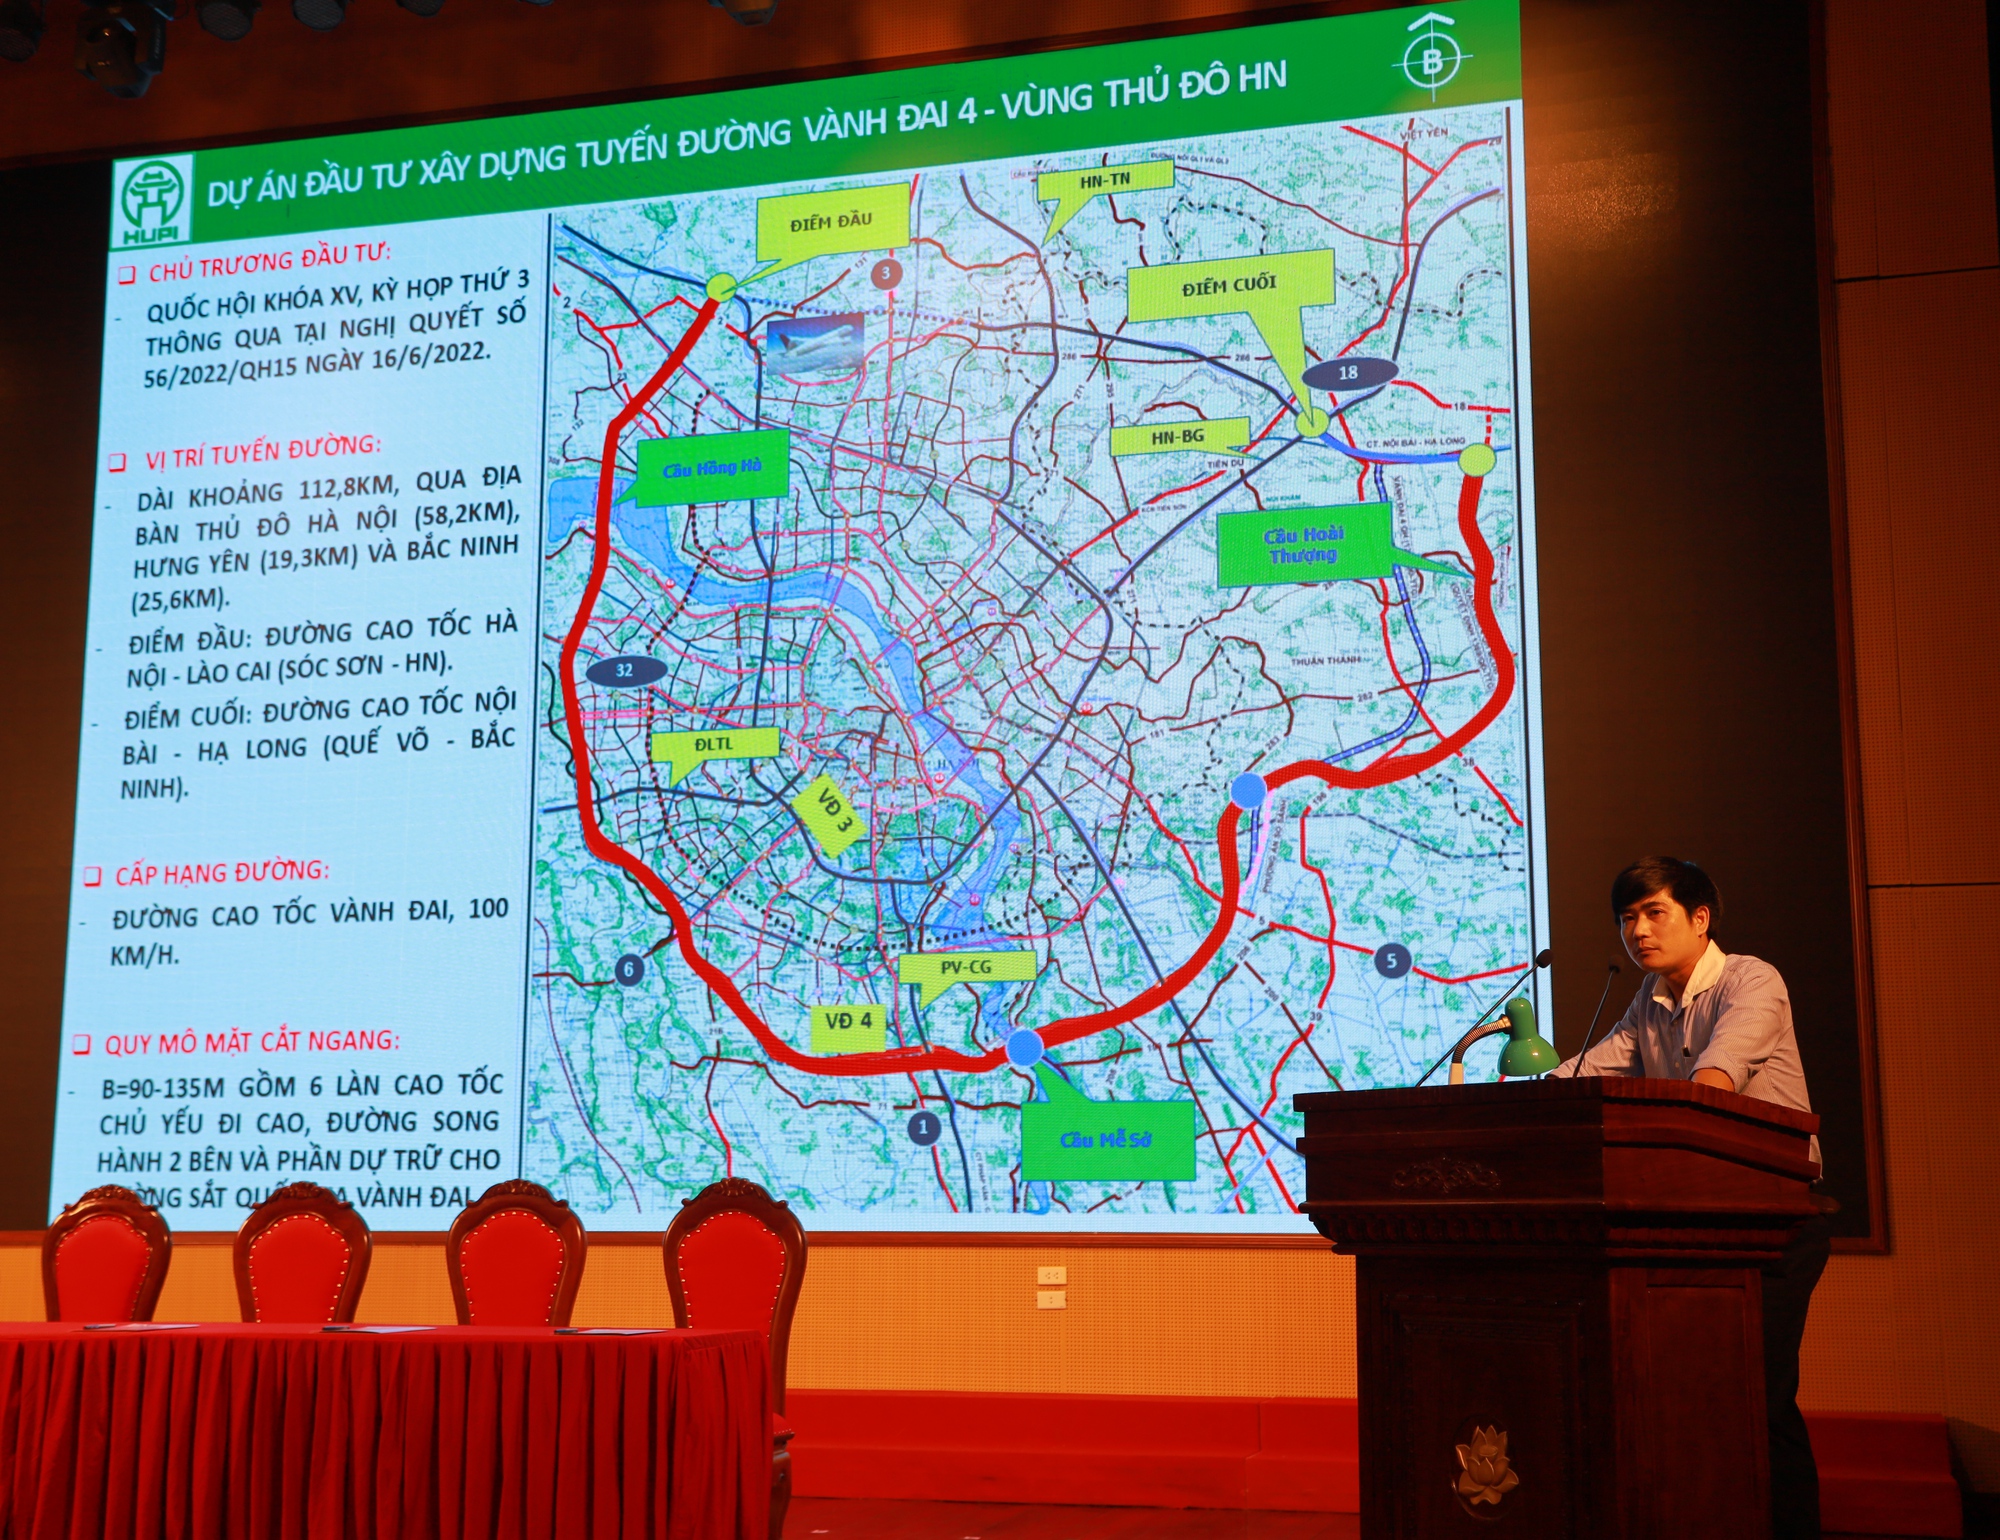 Đường đỏ tuyến Đường Vành đai 4 sẽ mở ra một tầm nhìn mới cho giao thông đô thị. Đây là dự án đầu tư công trọng điểm của Thủ tướng Chính phủ, giúp kết nối các đô thị lân cận và đưa quy hoạch đô thị lên một tầm cao mới. Hãy cùng đón chờ những thành quả đáng tự hào của đất nước Việt Nam.